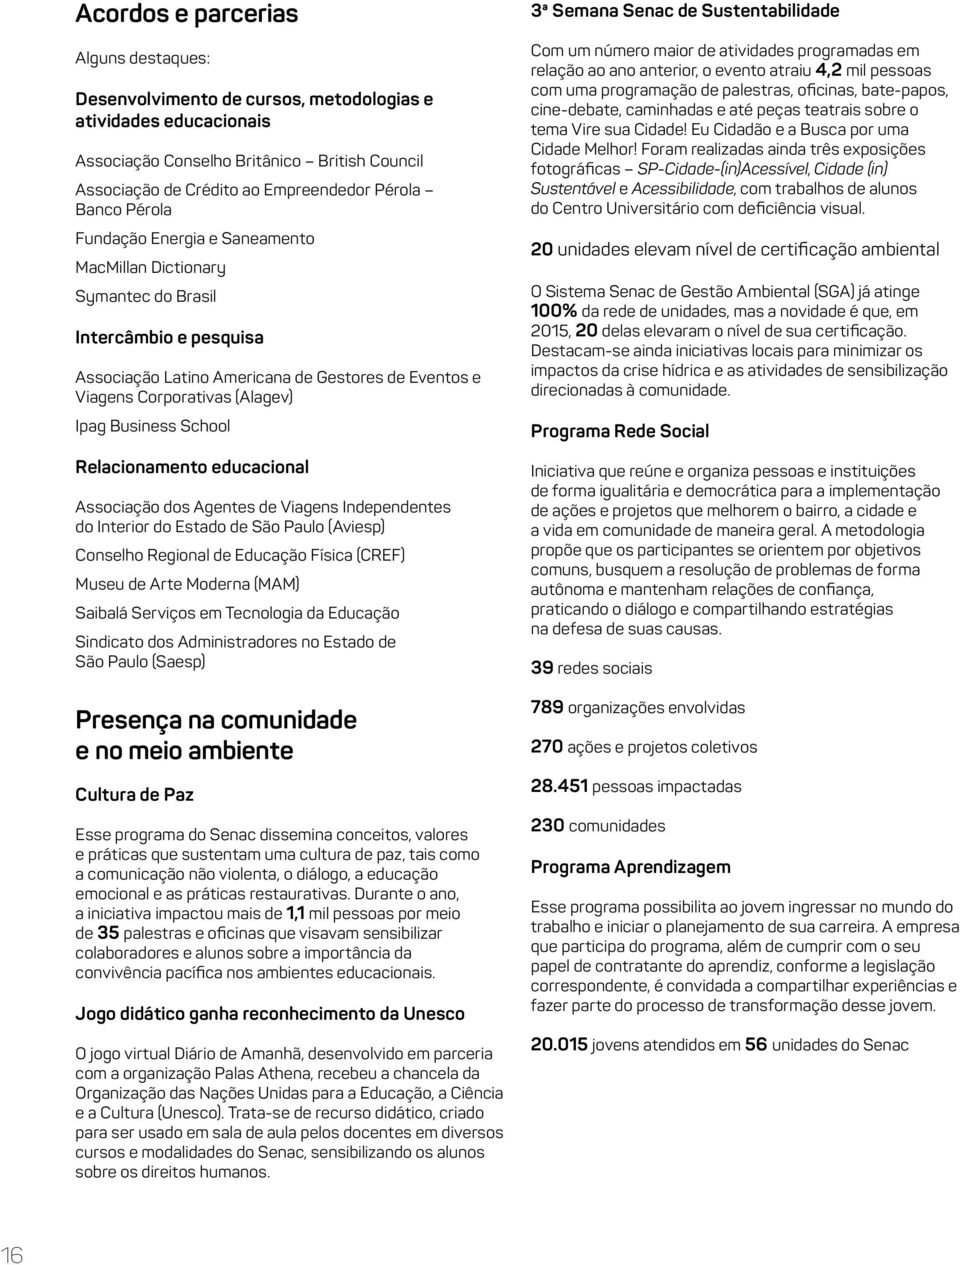 Business School Relacionamento educacional Associação dos Agentes de Viagens Independentes do Interior do Estado de São Paulo (Aviesp) Conselho Regional de Educação Física (CREF) Museu de Arte